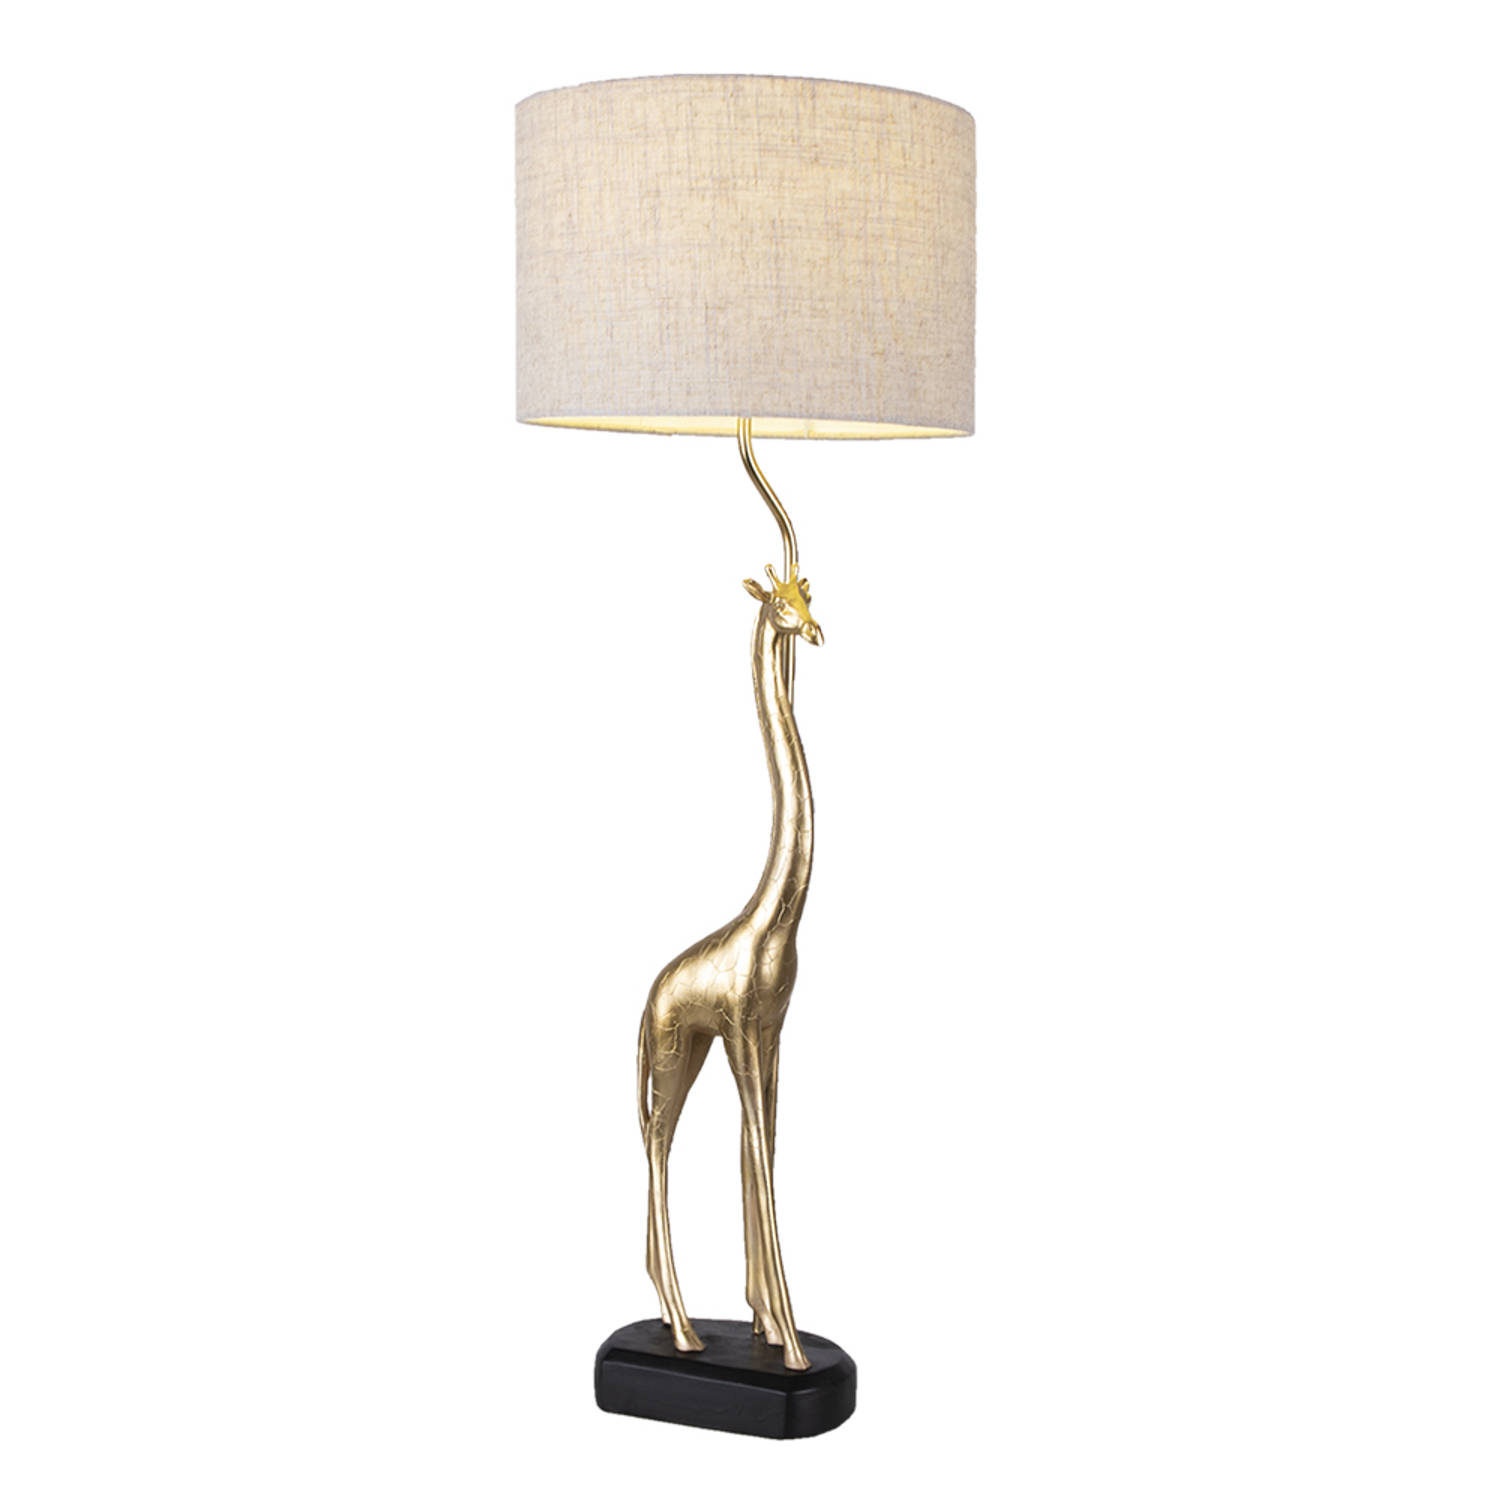 HAES DECO - Tafellamp - City Jungle - Goudkleurige Giraf, Formaat Ø 30x85 cm - Beige / Goudkleurig Polyresin - Bureaulamp, Sfeerlamp